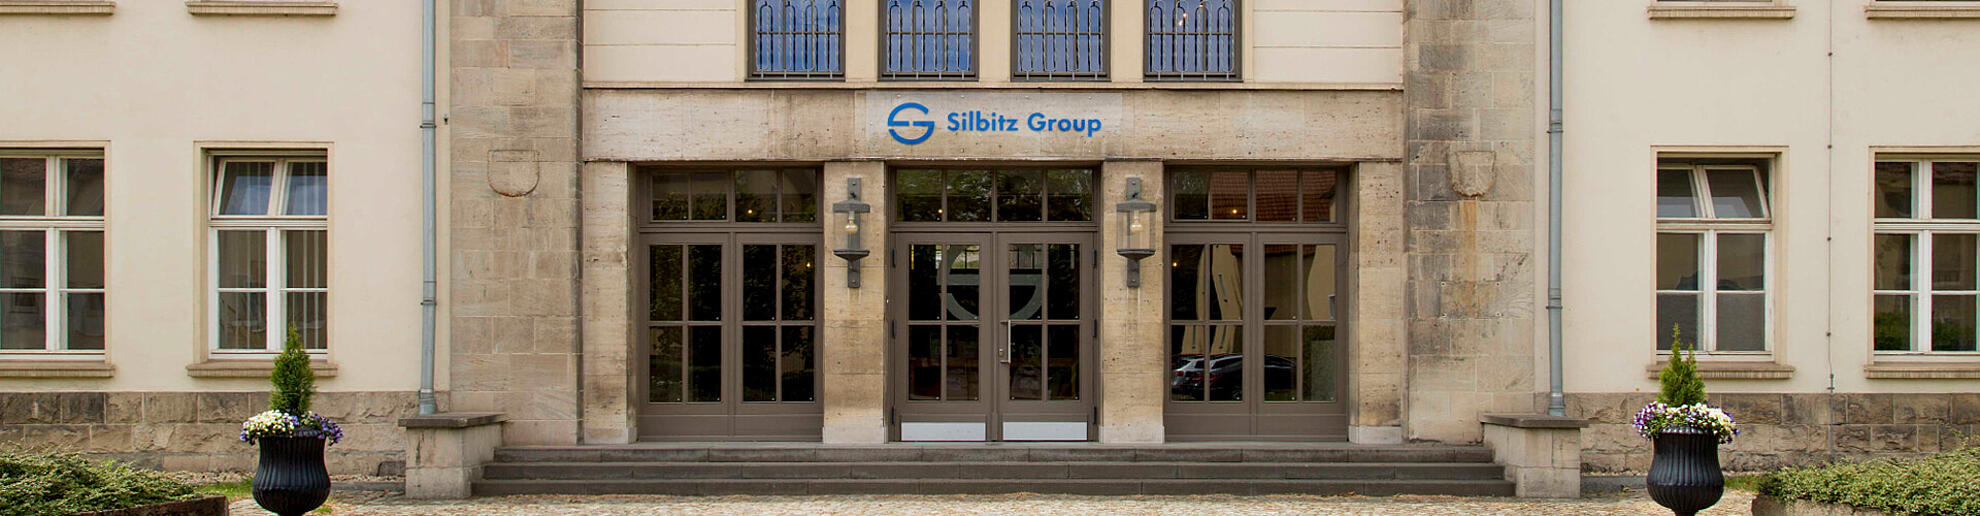 Eingang und Fassade des Hauptgebäudes der Silbitz Group